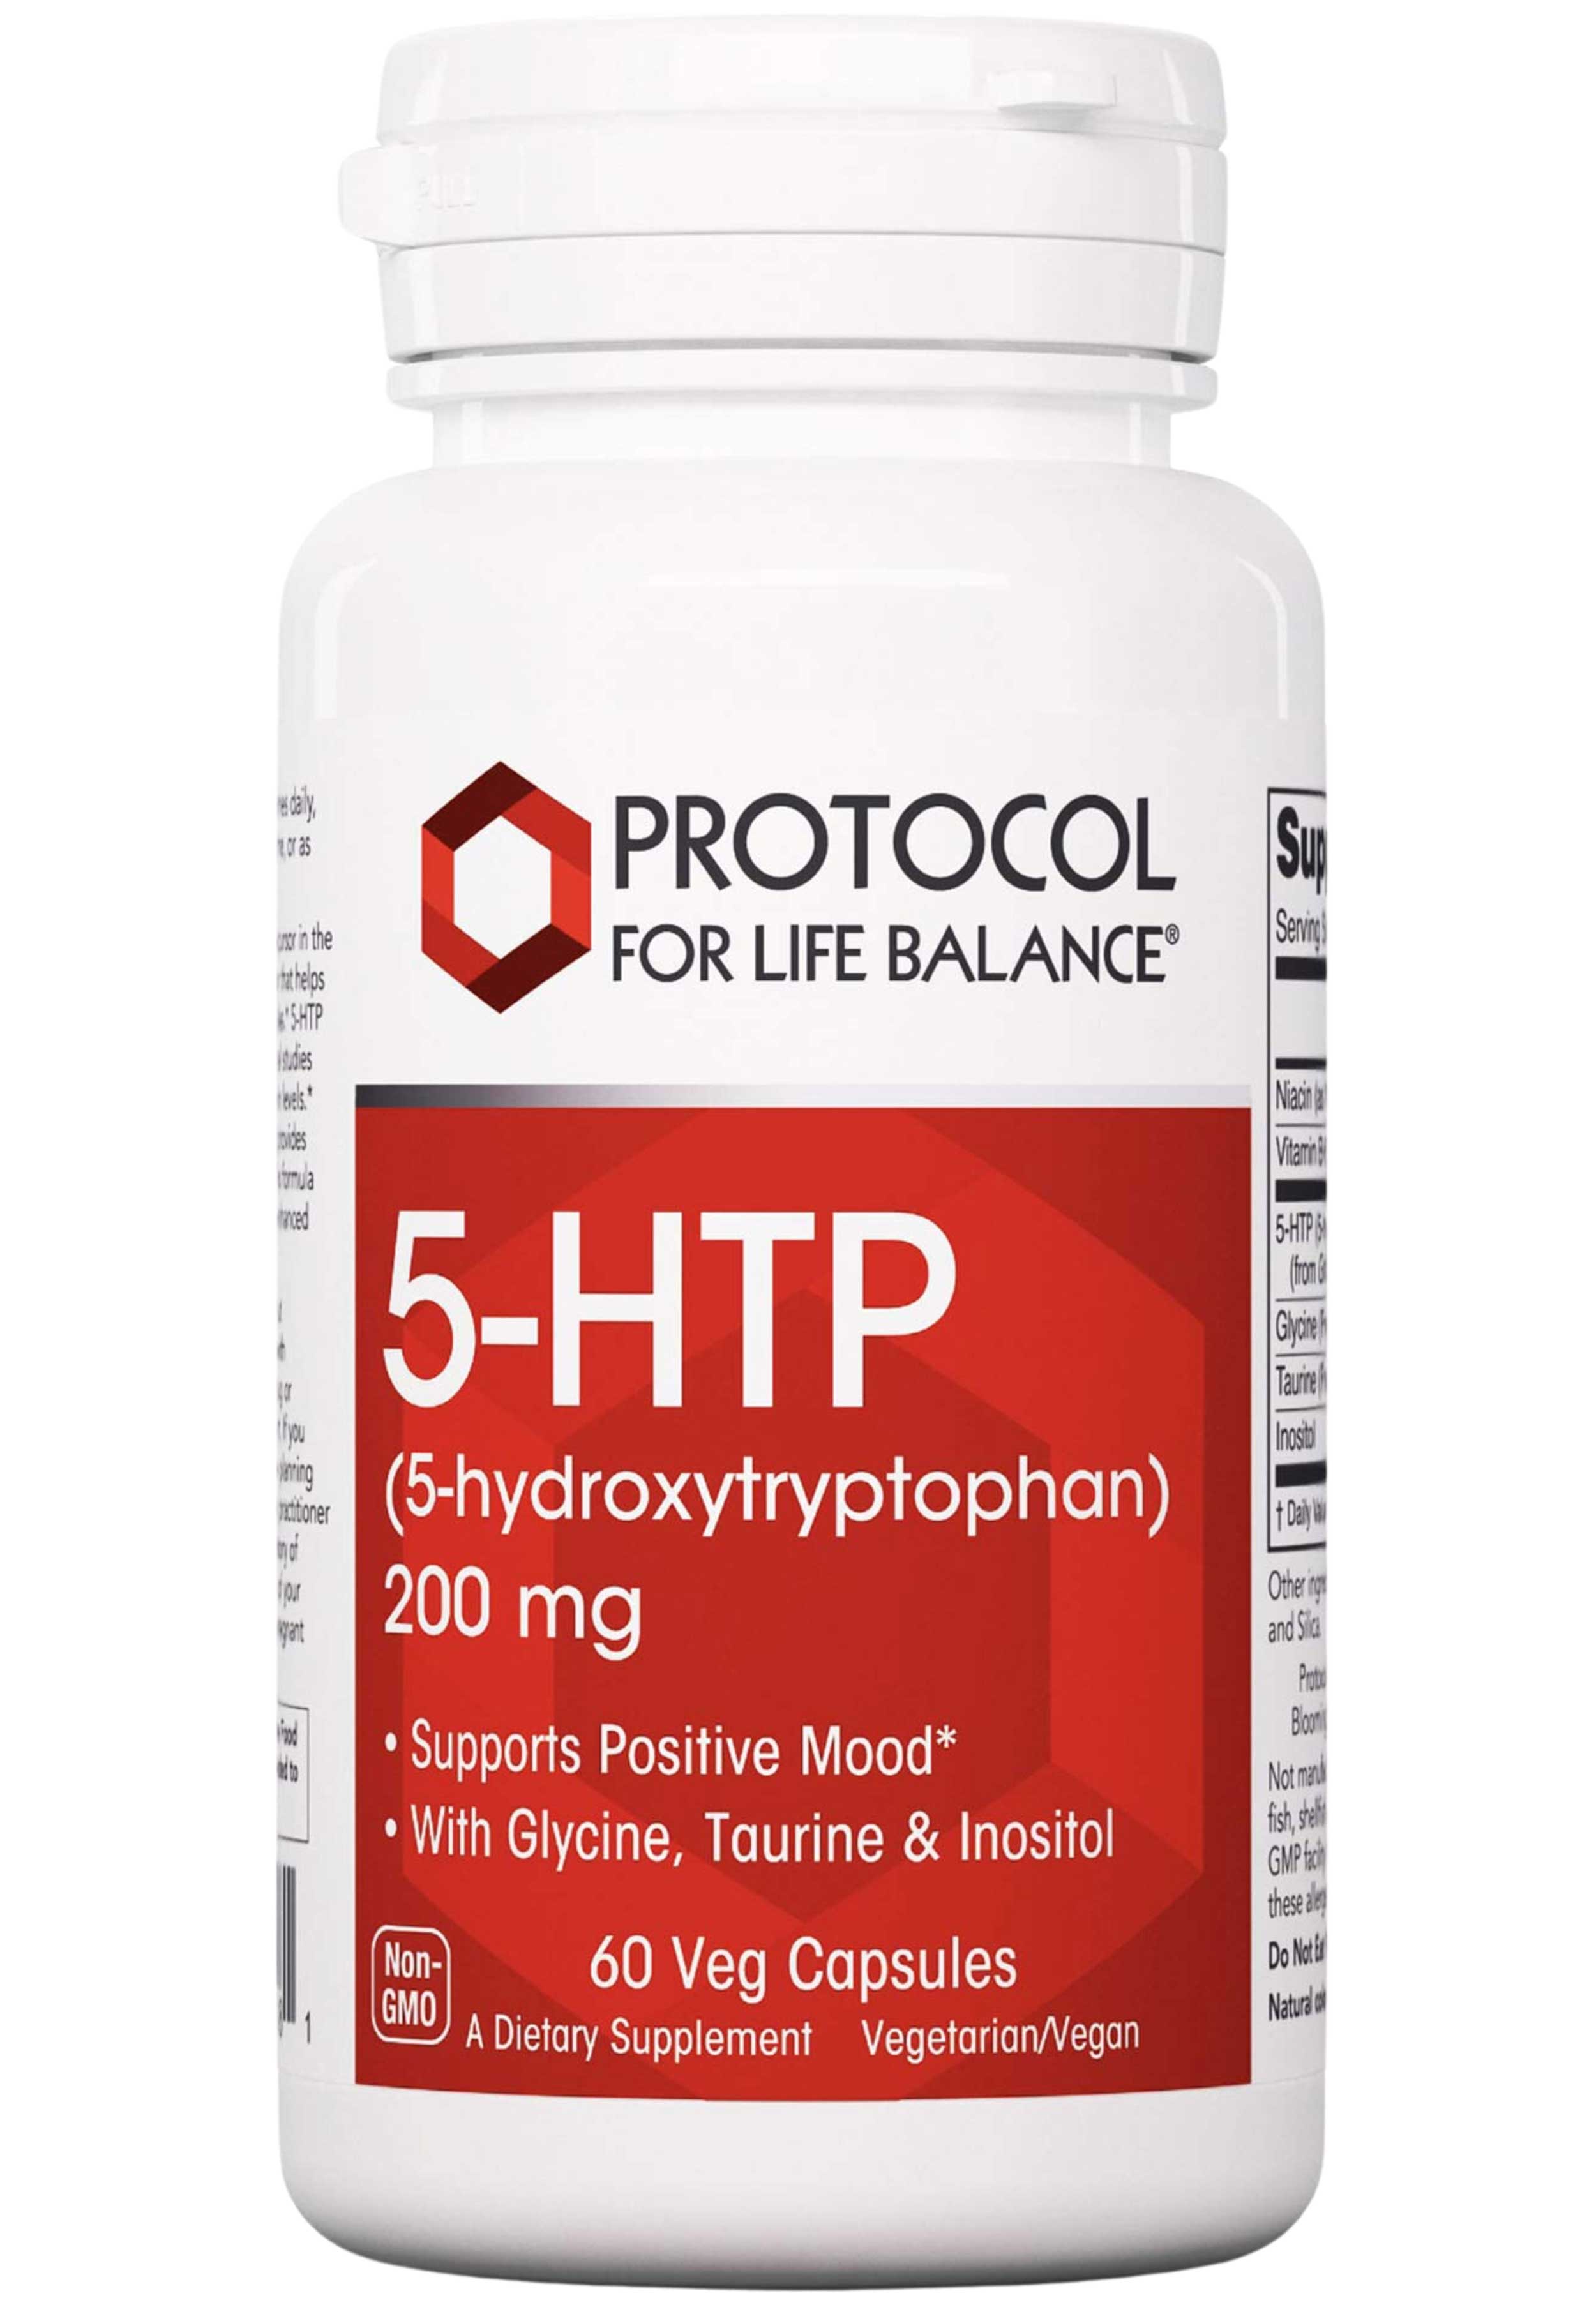 Protocol for Life Balance 5-HTP